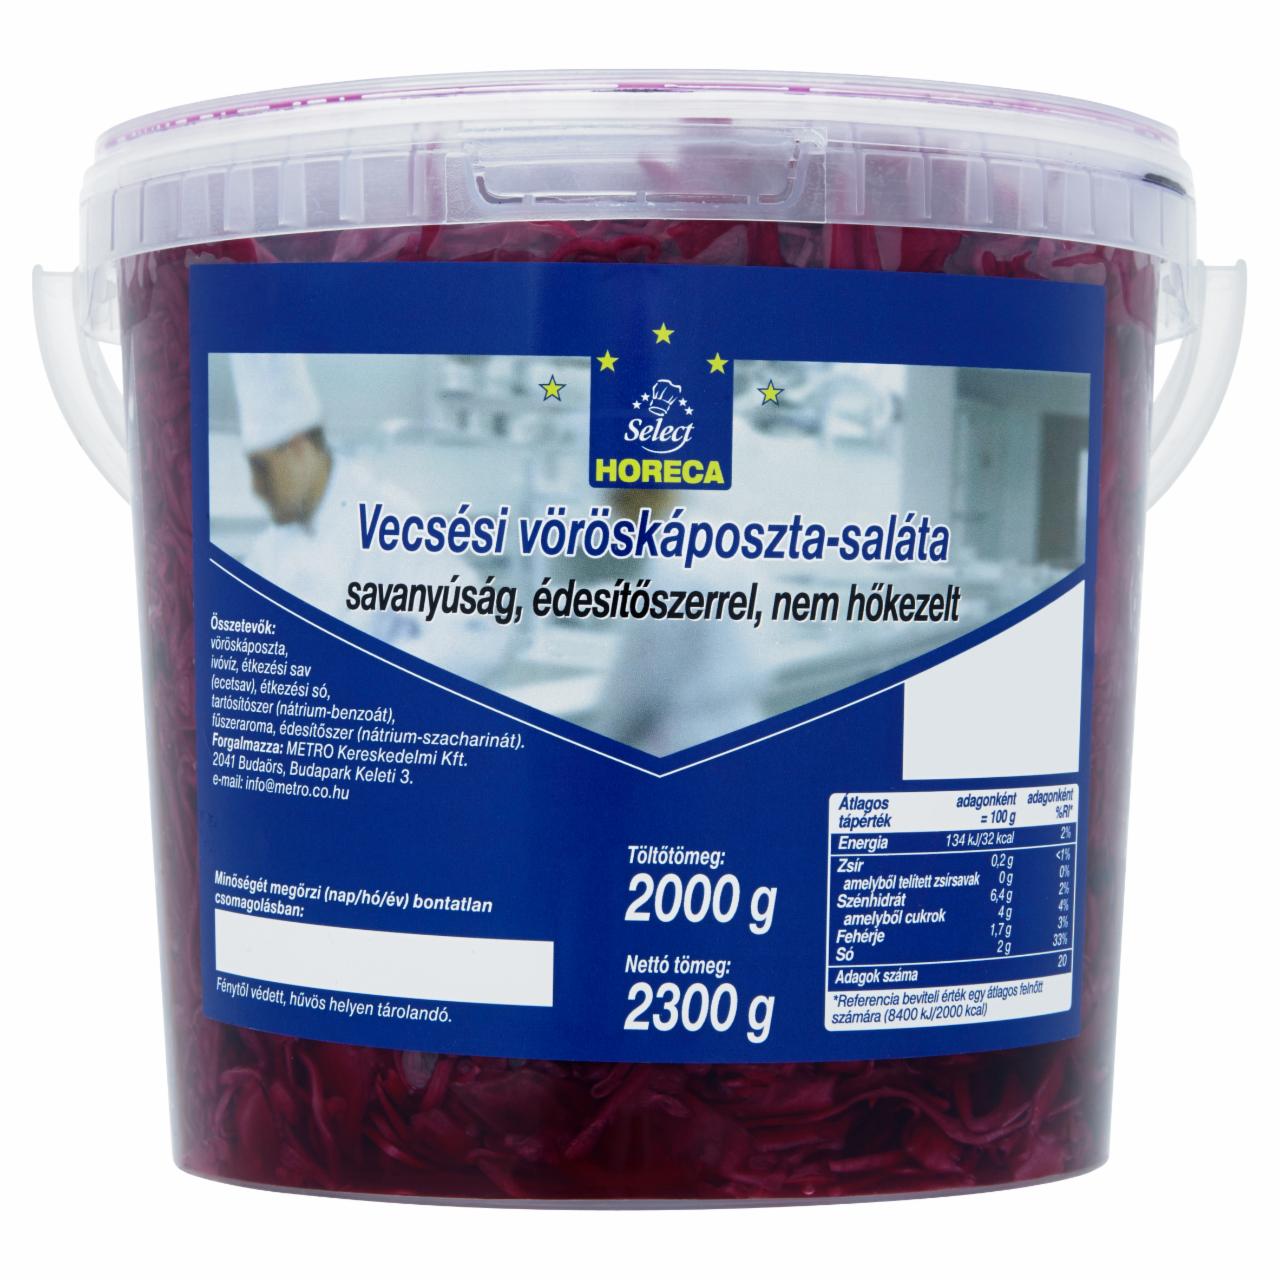 Képek - Horeca Select vecsési vöröskáposzta-saláta édesítőszerrel 2300 g